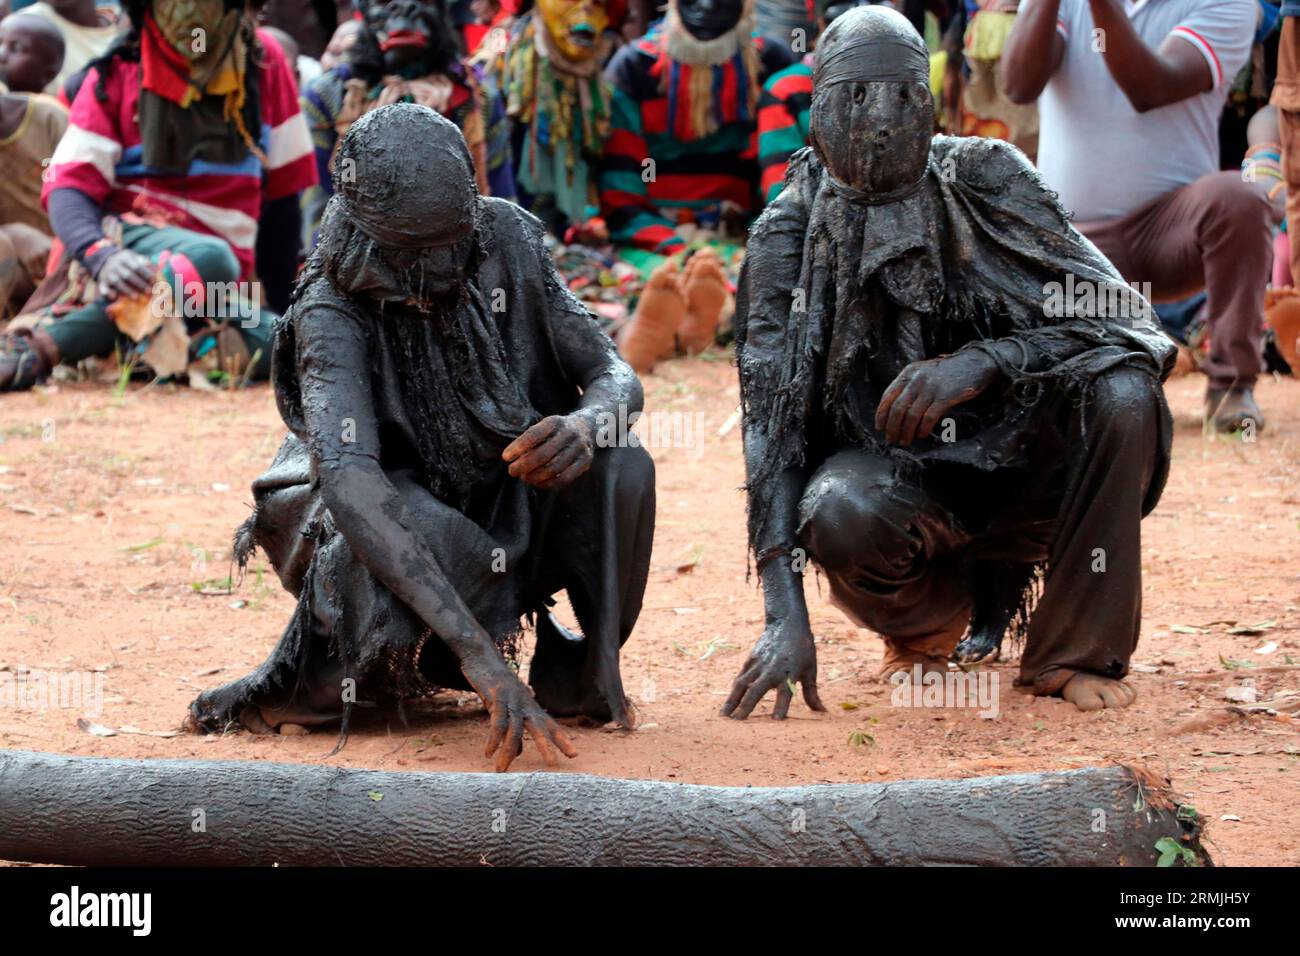 Maskeraden bei einer traditionellen Zeremonie, bei der ein Häuptling in Malingunde, Lilongwe, errichtet wurde. Maskeraden sind die übliche Form der Unterhaltung bei solchen Zeremonien. Malawi. Stockfoto